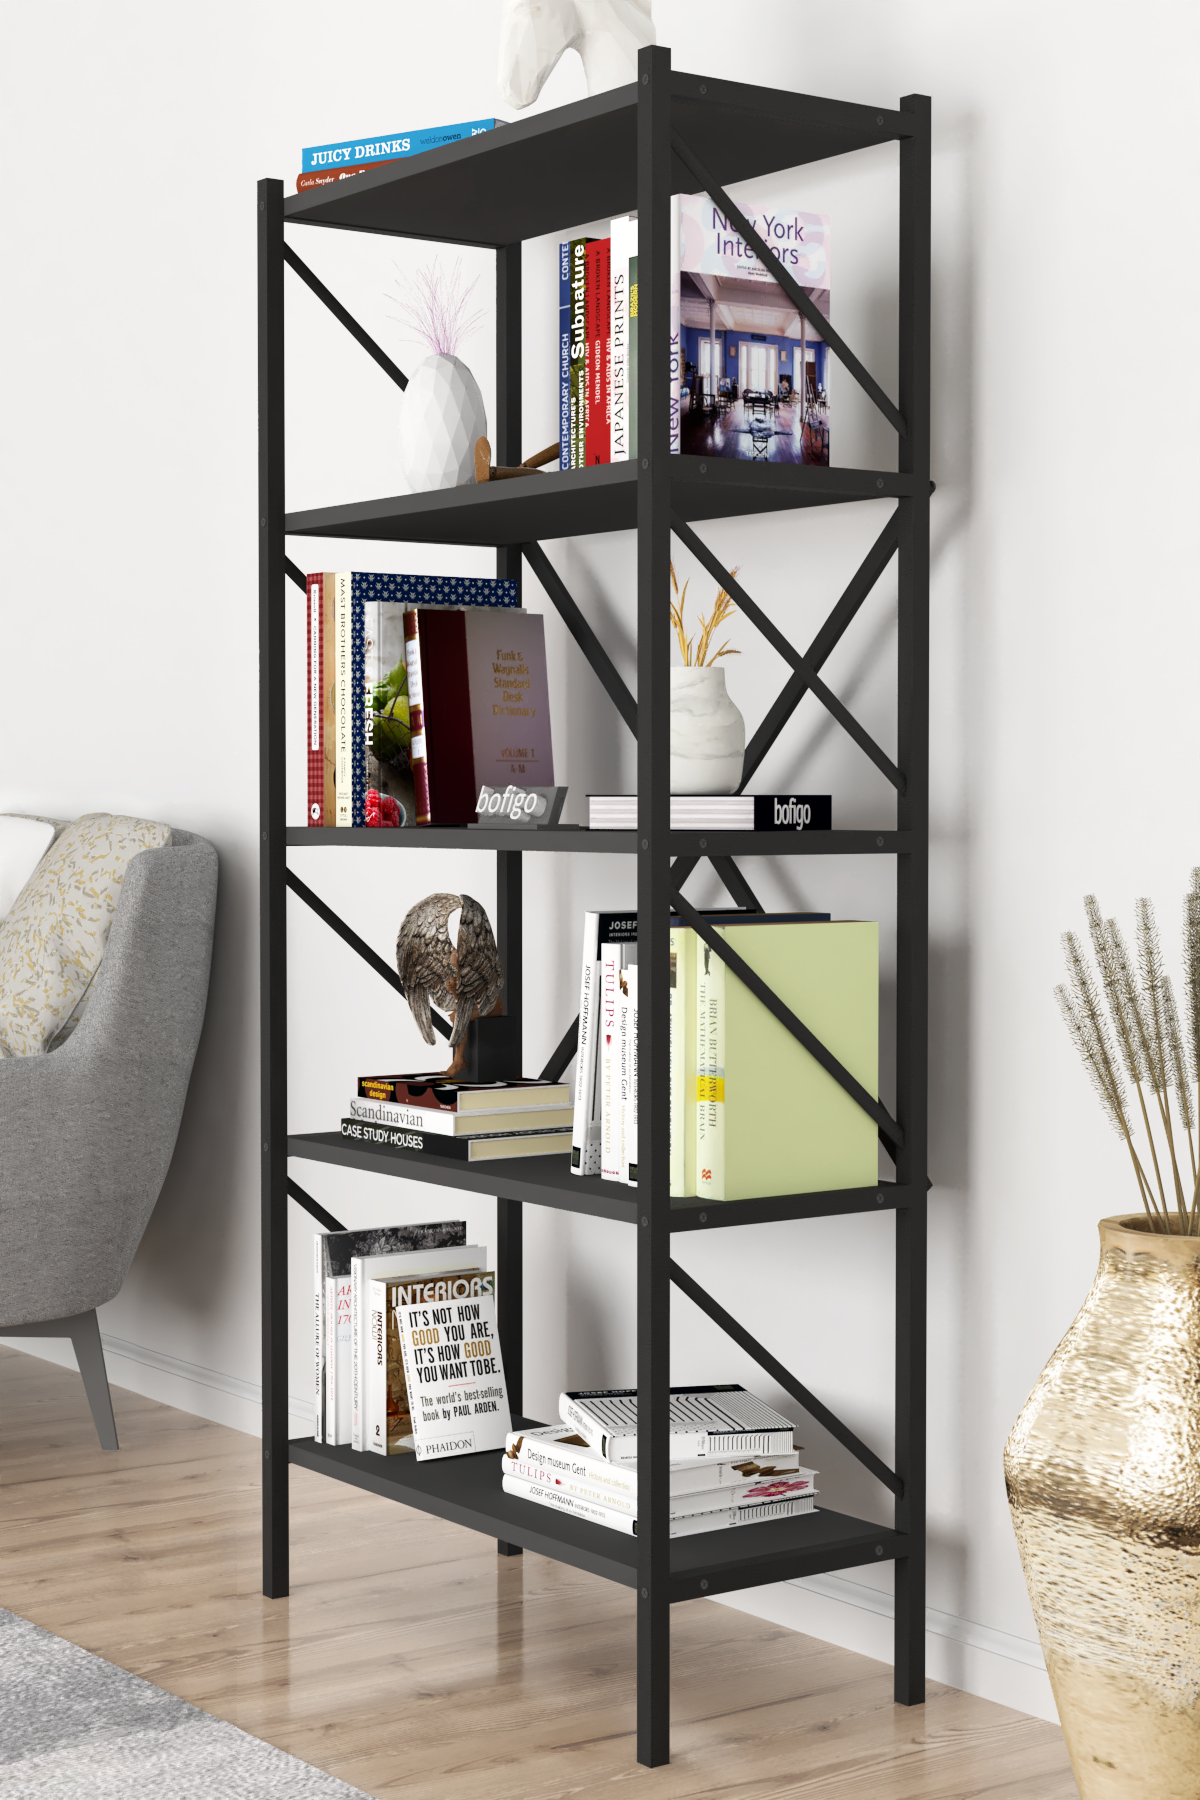 Bofigo Decorative 5 Shelf Bookcase Metal Bookcase Anthracite